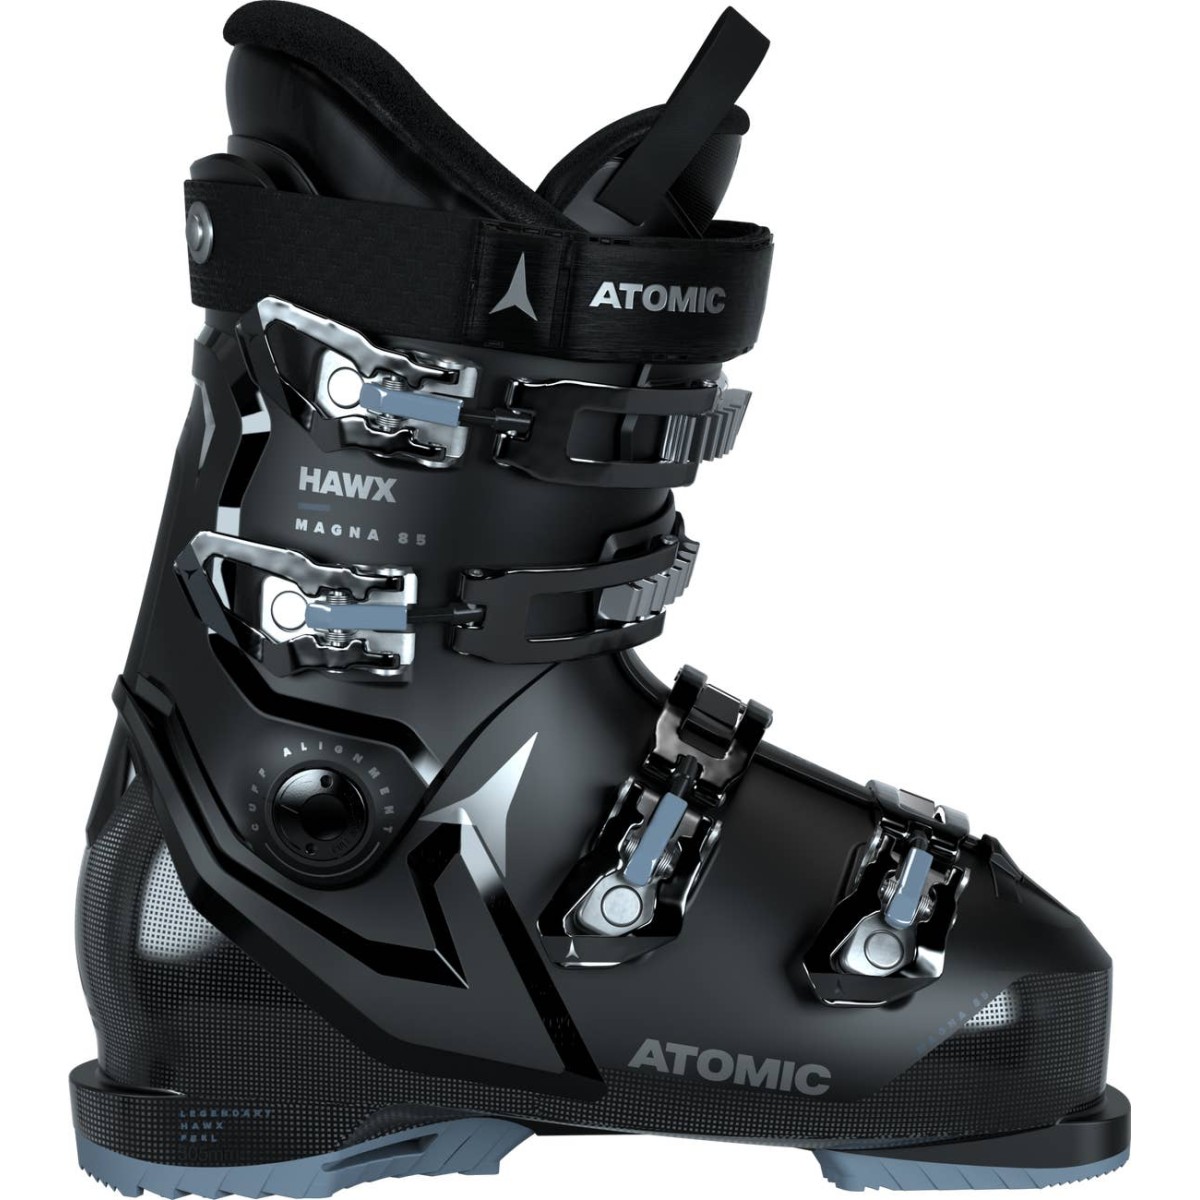 ATOMIC HAWX MAGNA 85 W alpine ski boots - black